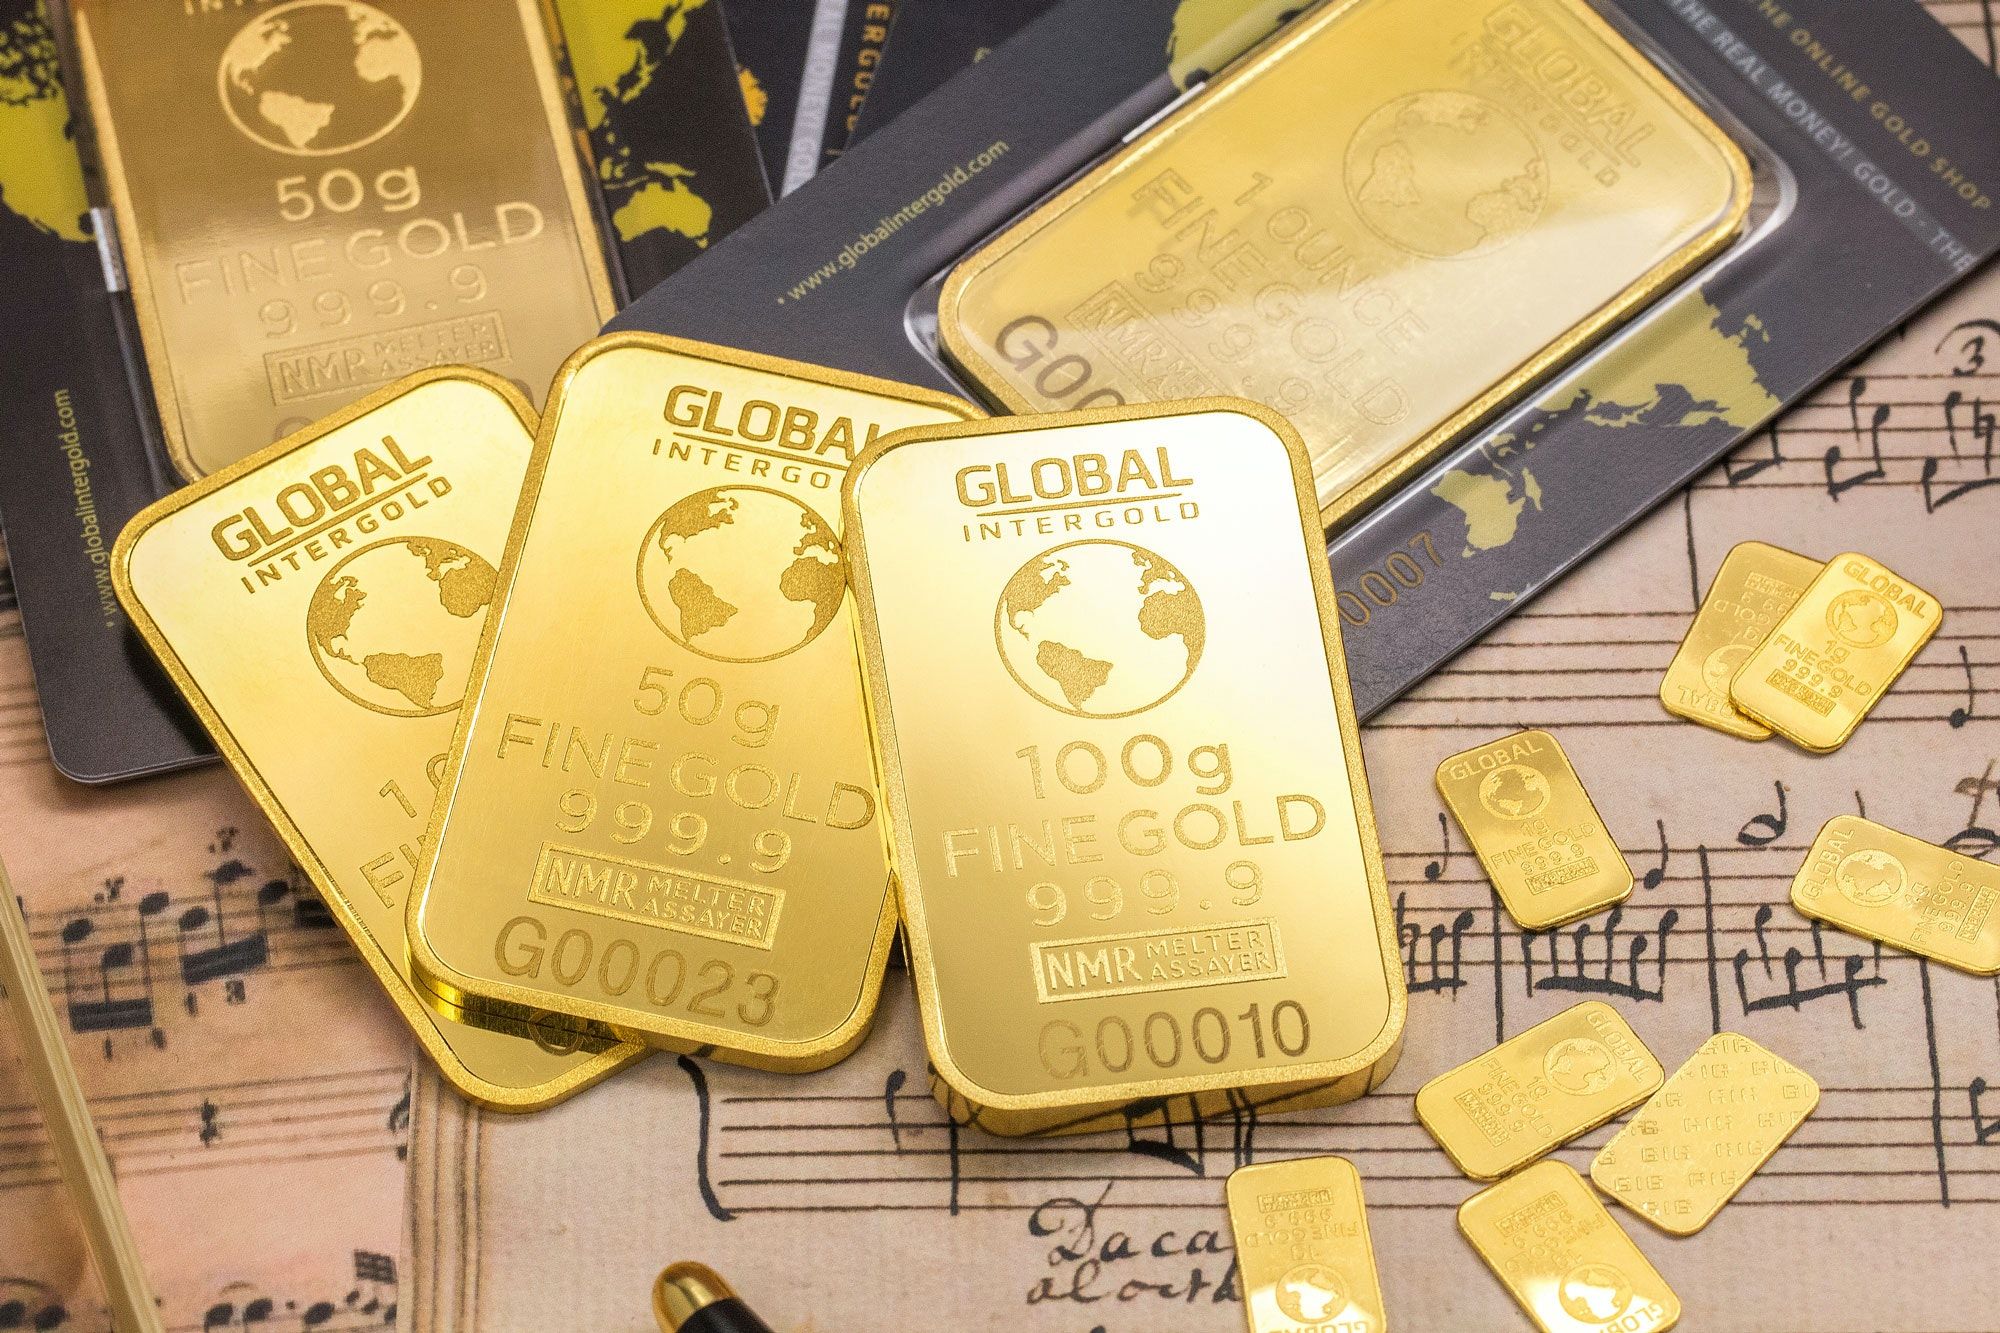 Harga Emas Antam dan UBS Pegadaian Hari Ini 29 Juni 2022 Semua Kompak Turun Mulai 519 Ribu/Harga Emas Pegadaian Hari Ini 29 Juni 2022